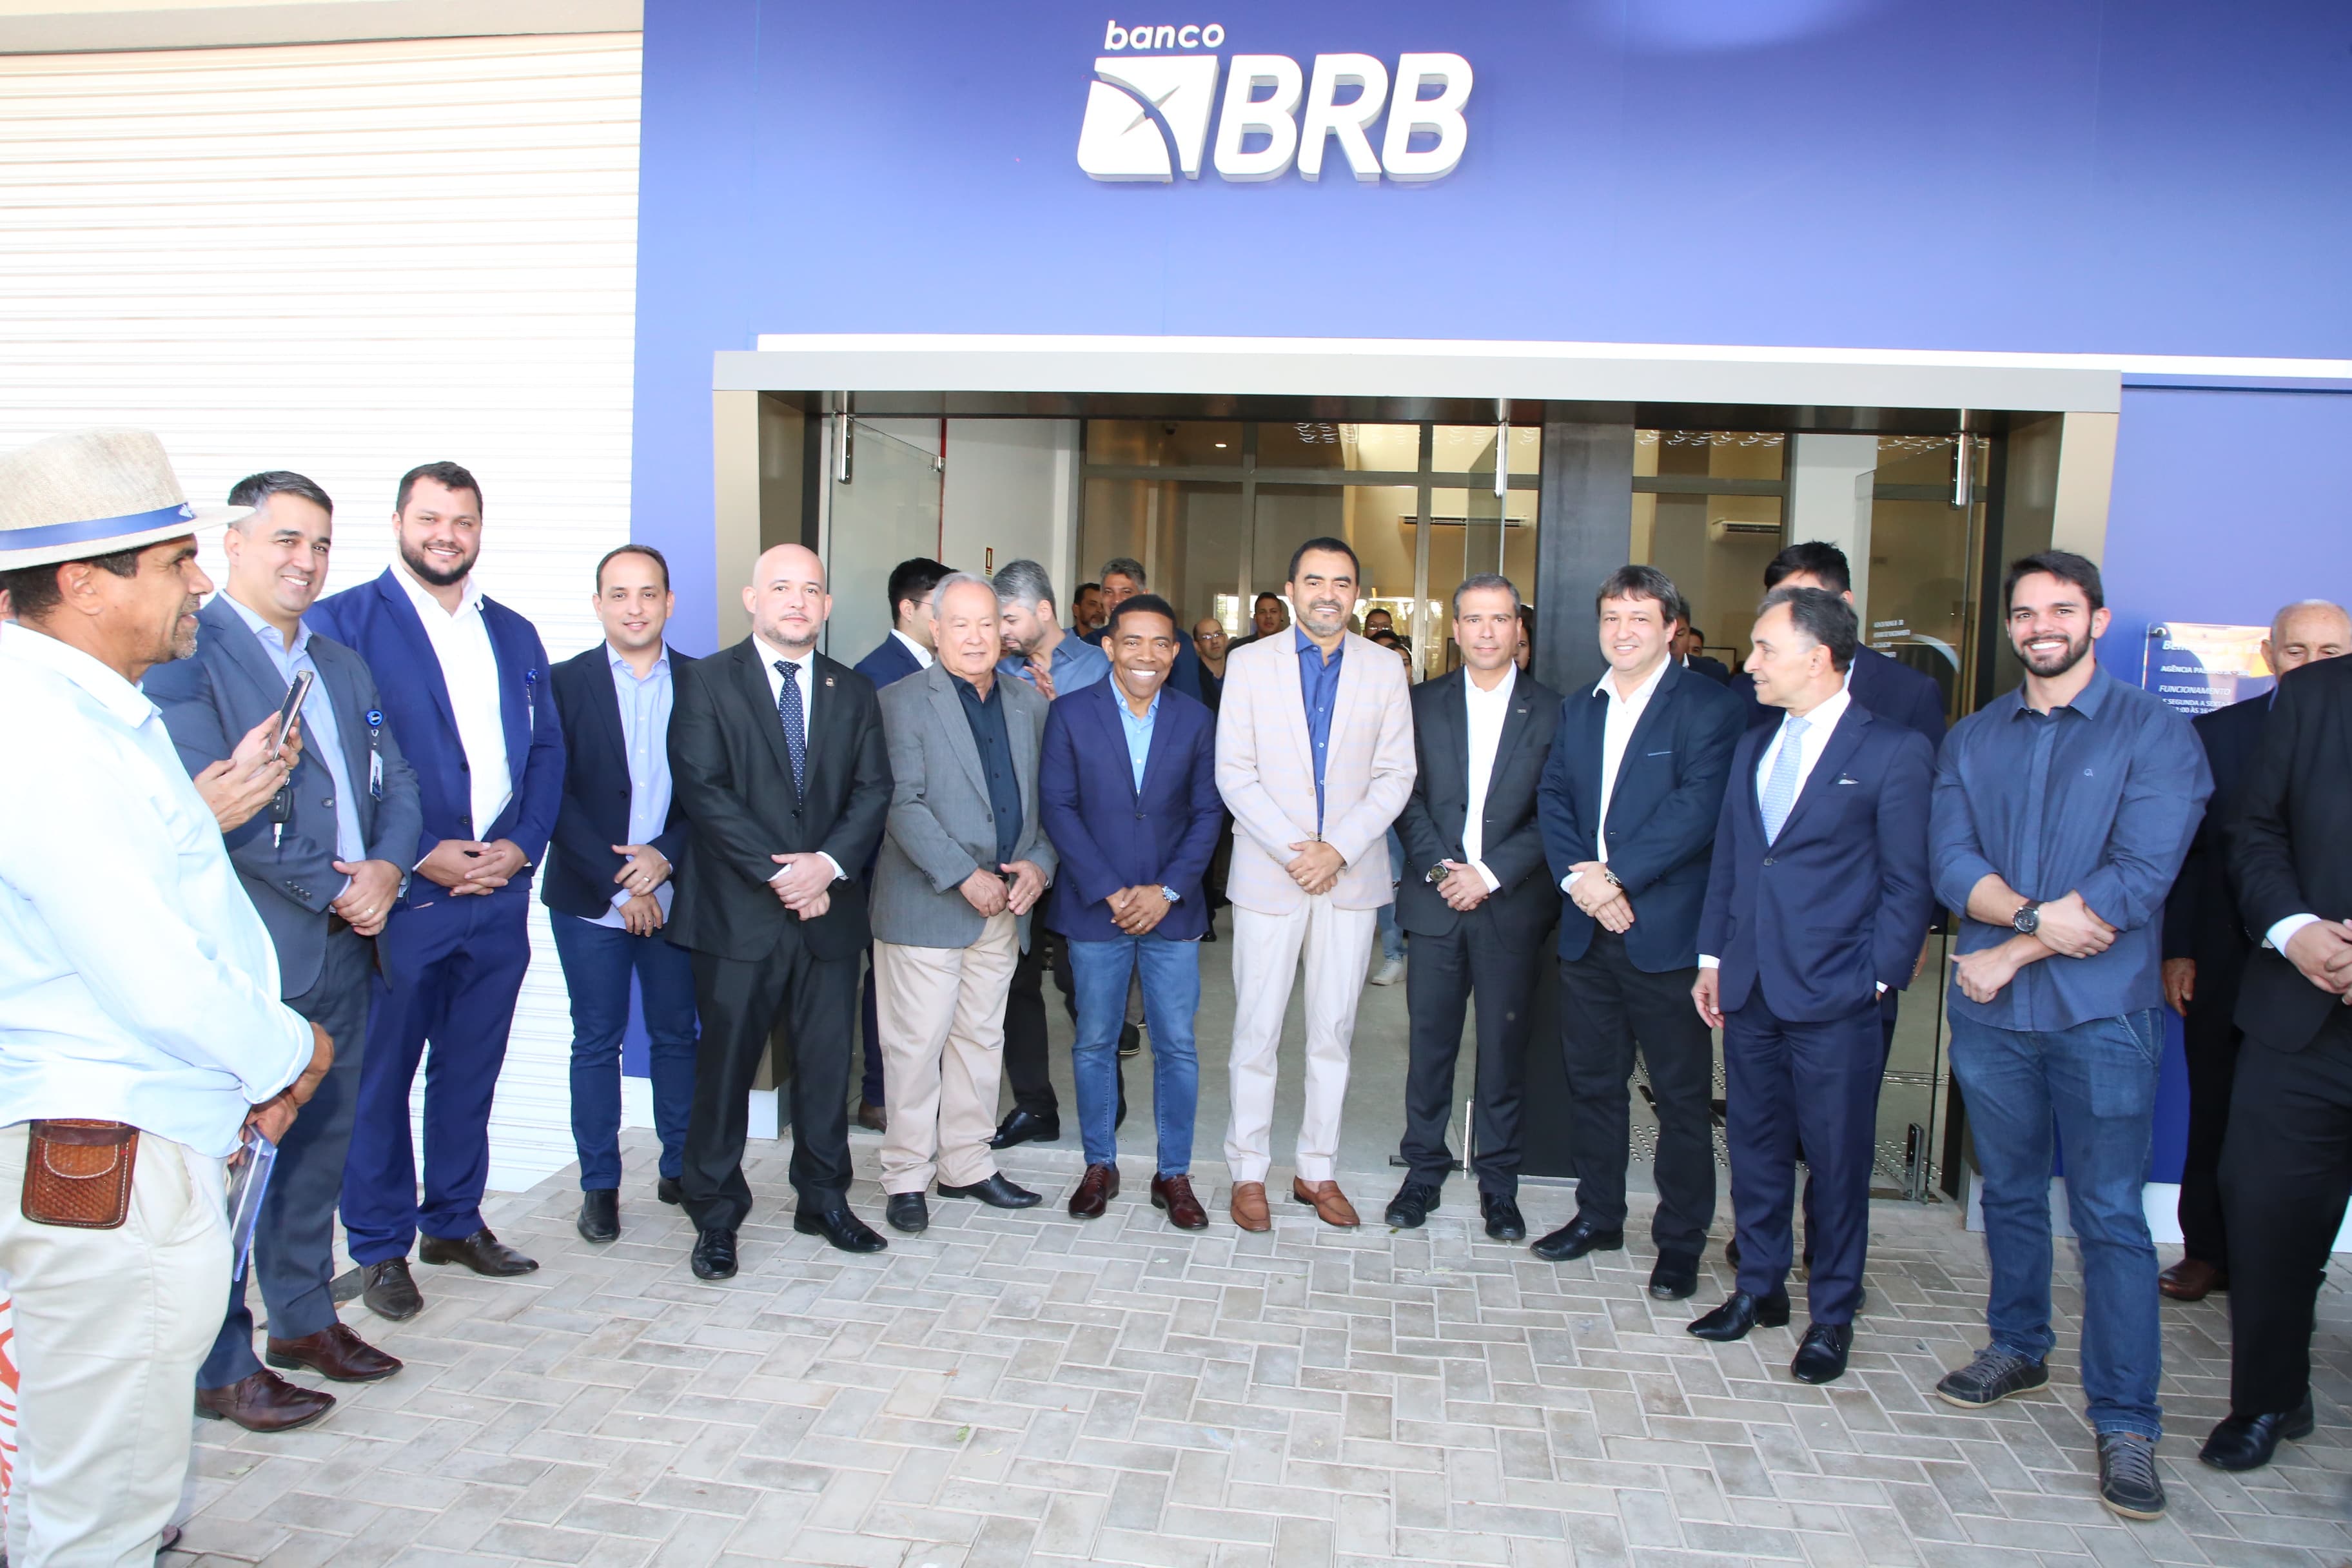 Faciet participa de reunião com BRB  e discutem expansão bancária em Palmas